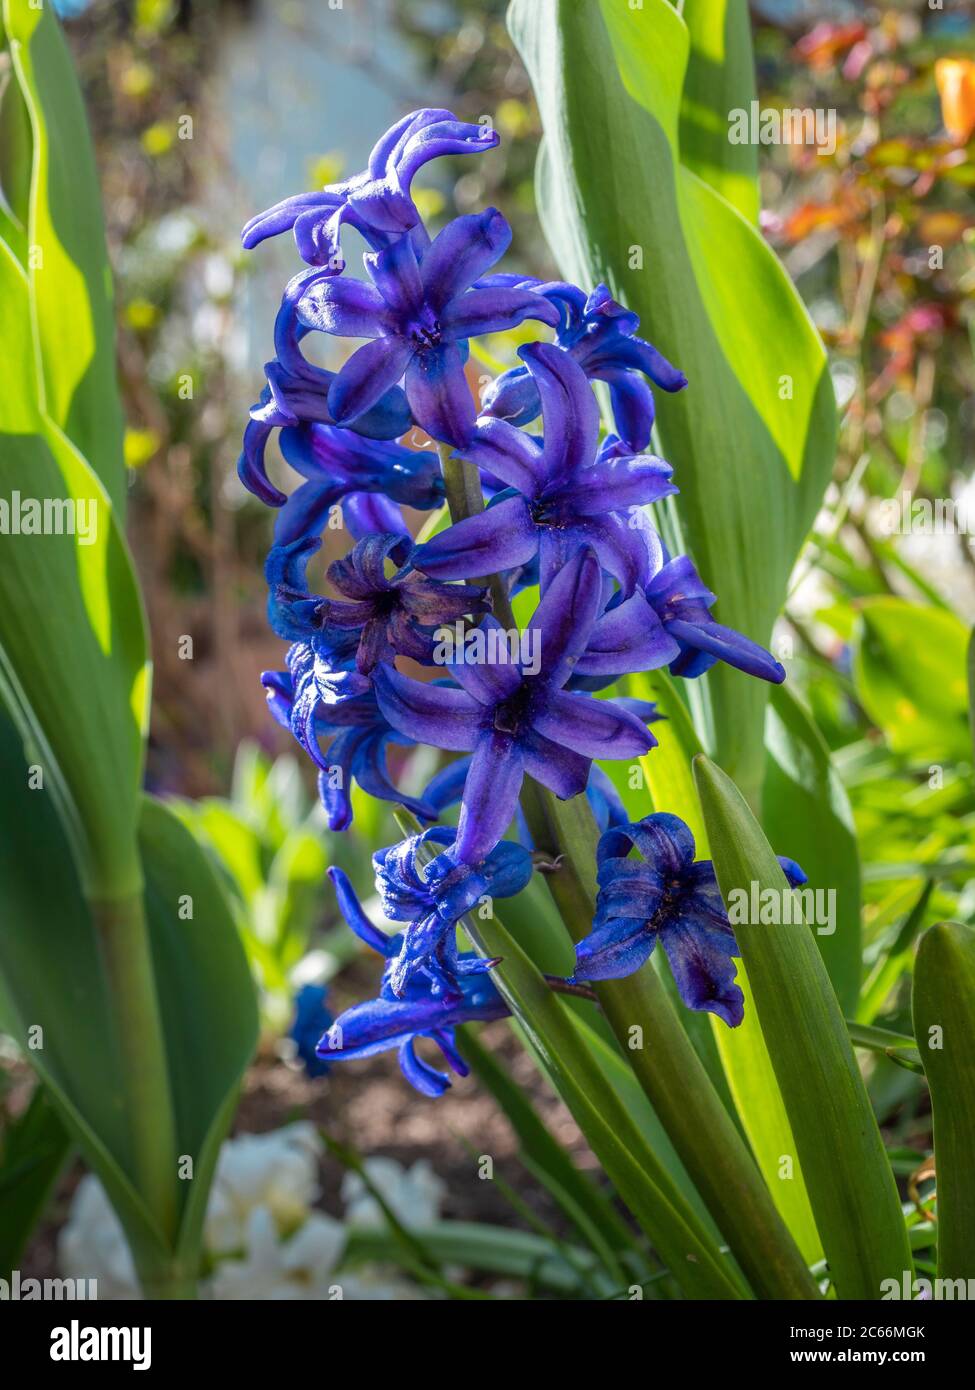 Jacinto de jardín azul, jacinto (Hyacinthus), familia de espárragos (Asparagaceae) Foto de stock